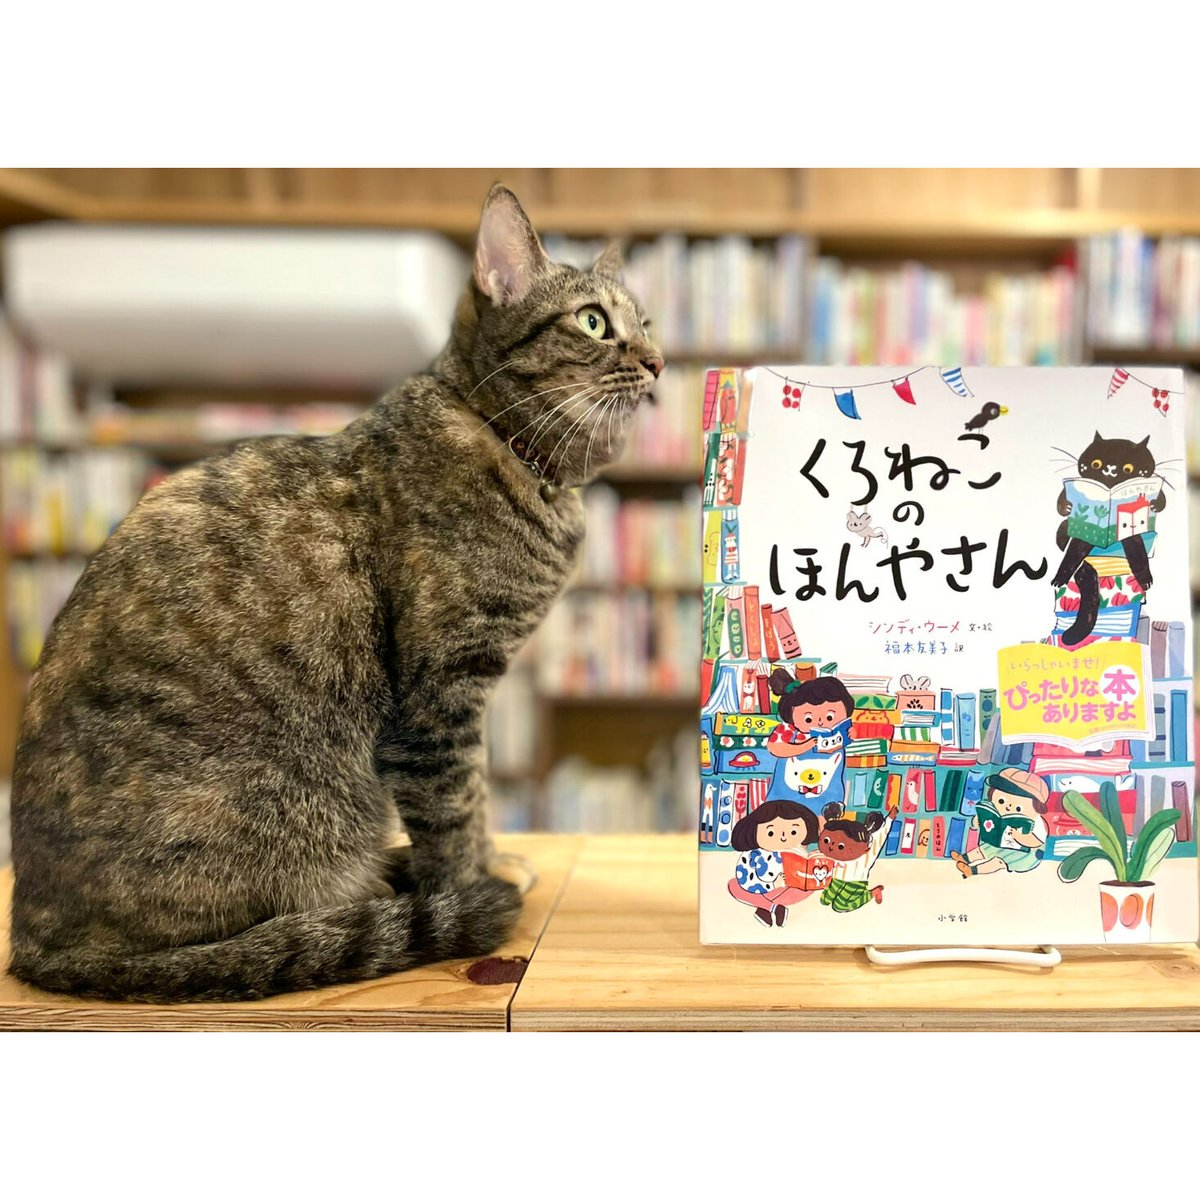 Shop　Virtual　Cat's　くろねこのほんやさん　Books　Meow　β